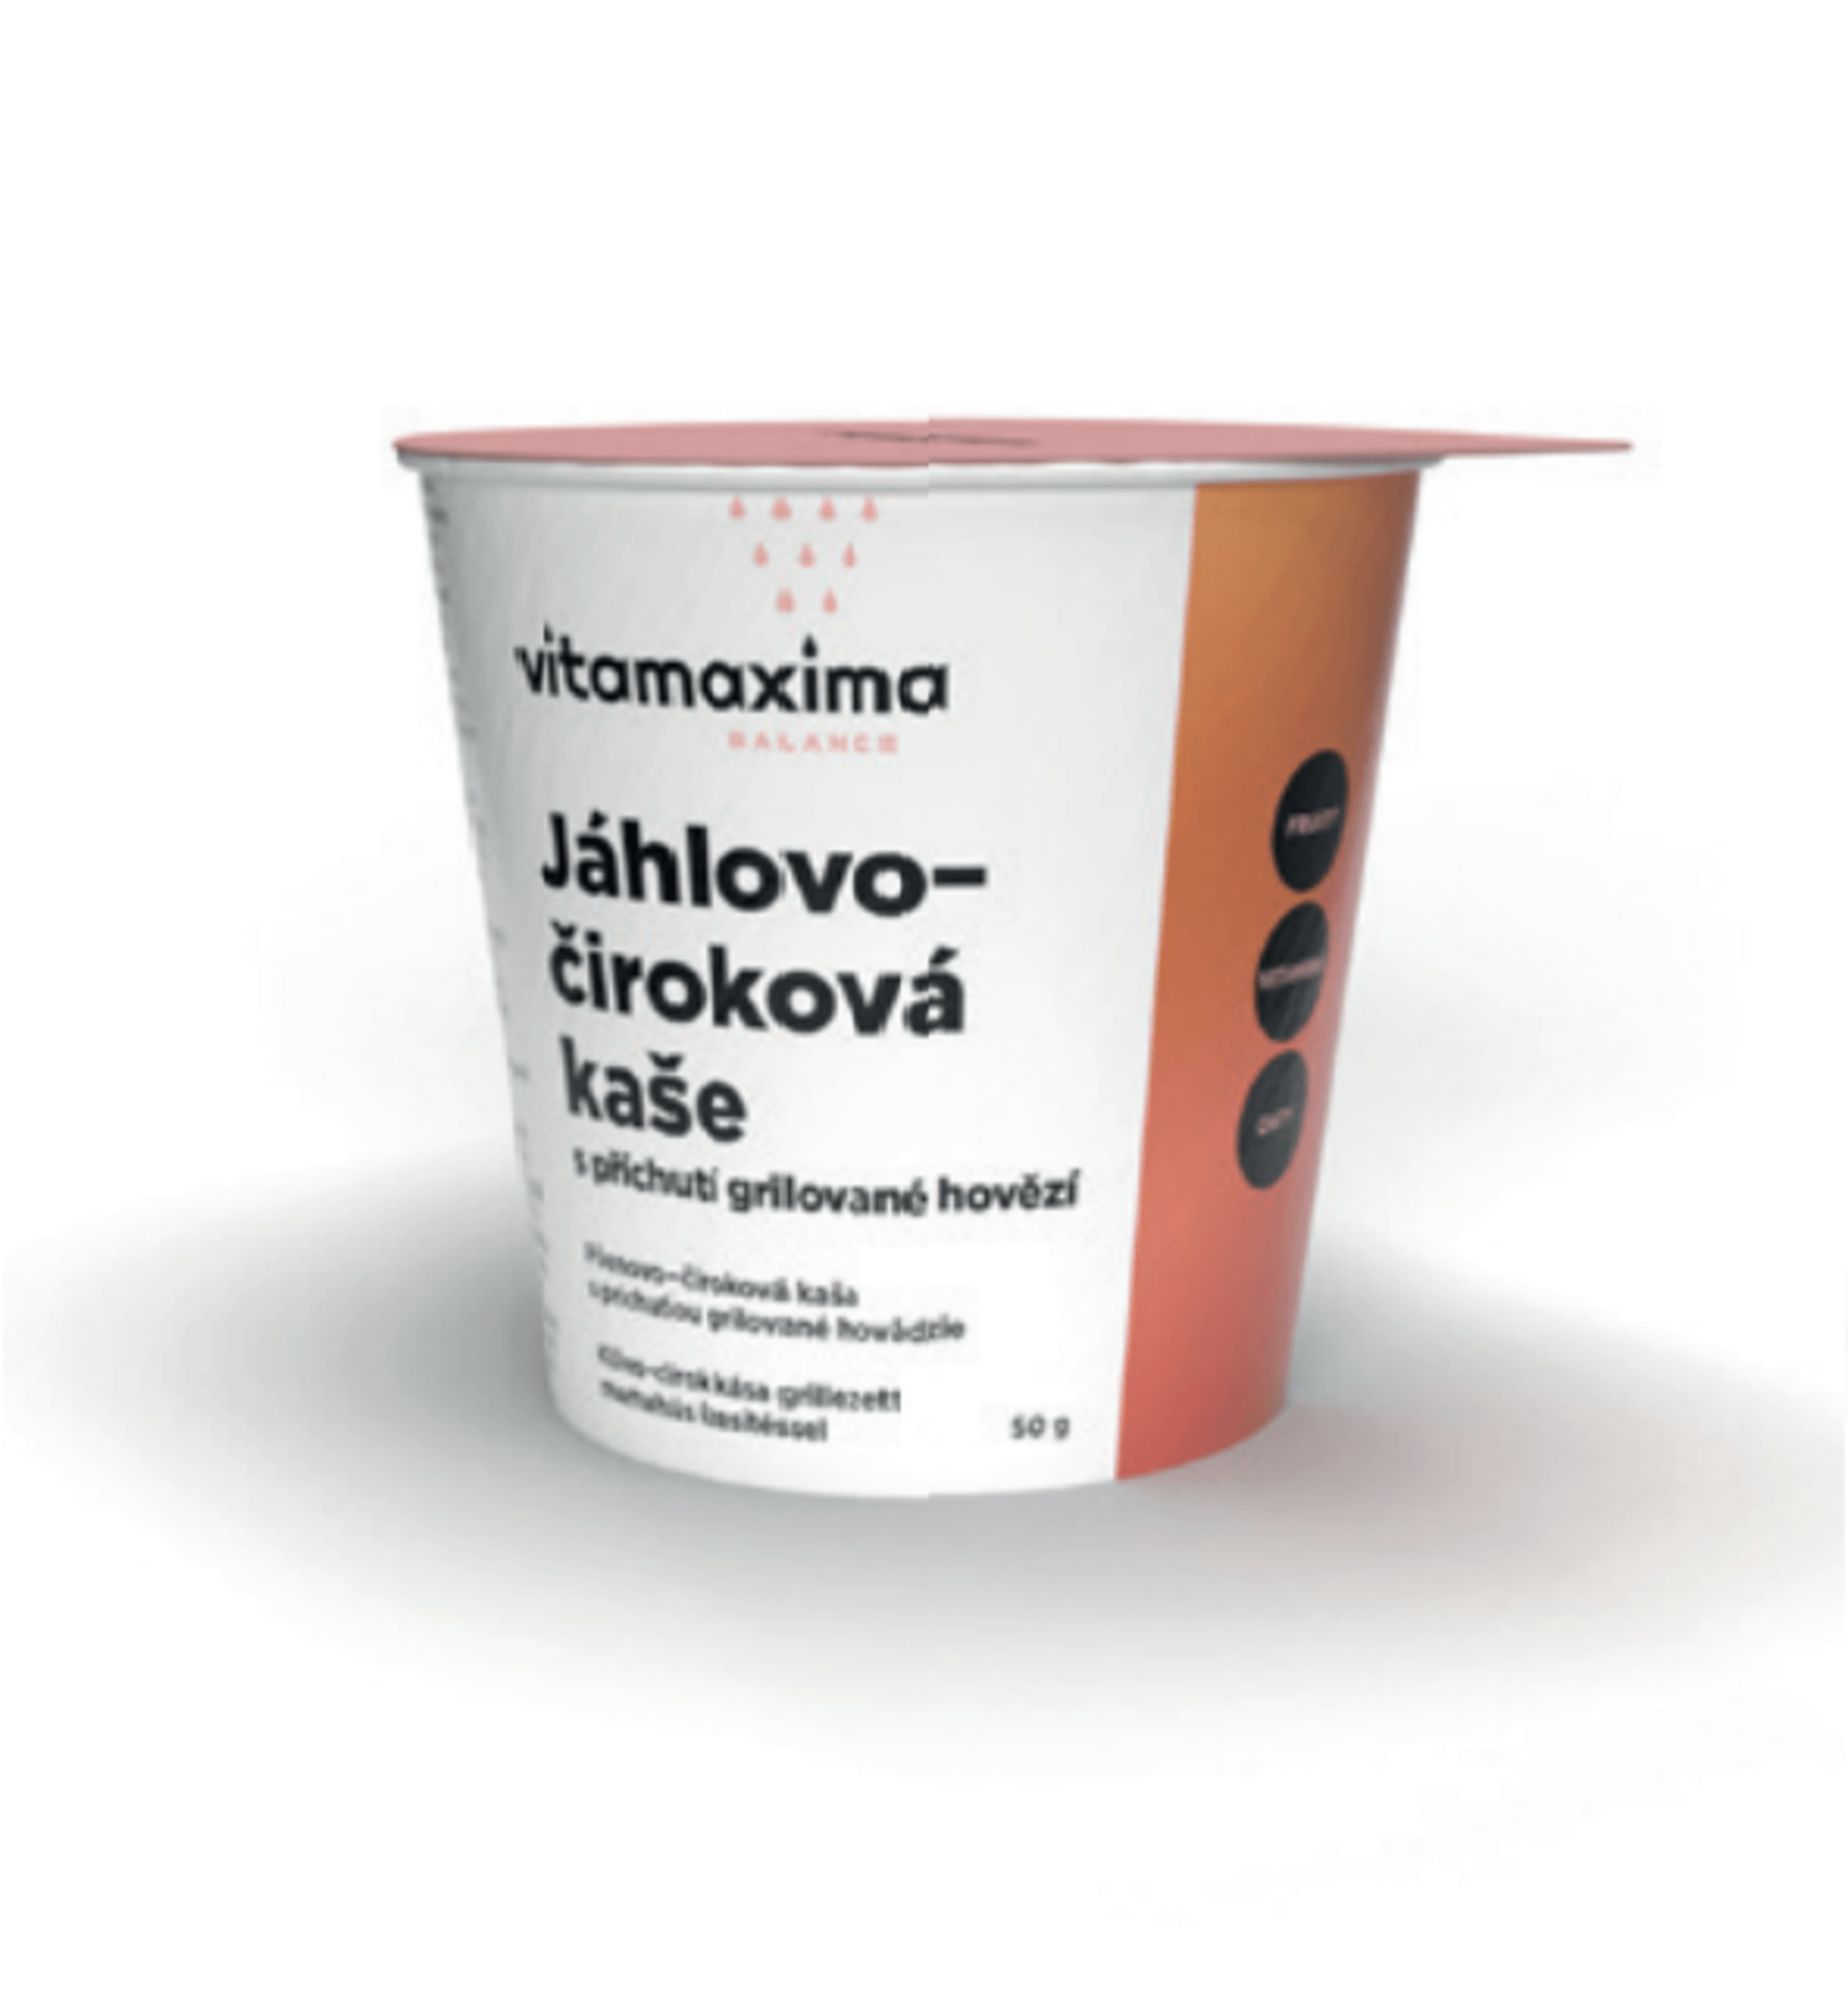 Vitamaxima Jáhlovo - čiroková kaše s příchutí gril. hovězí 50 g - expirace